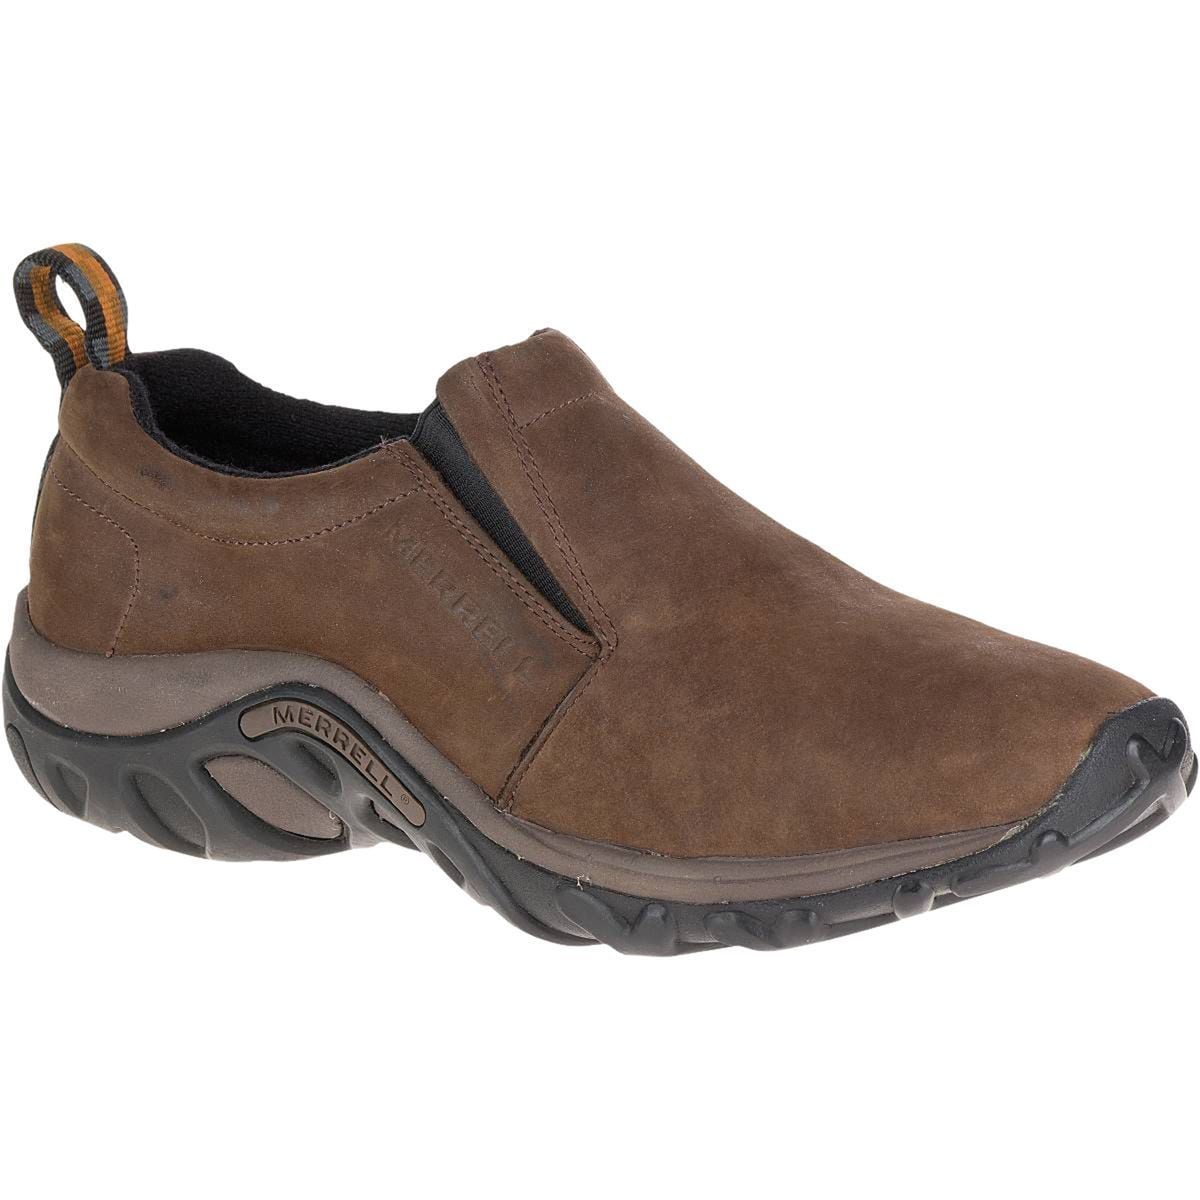 Merrell Jungle Moc Nubuck Shoe - Men's - Footwear